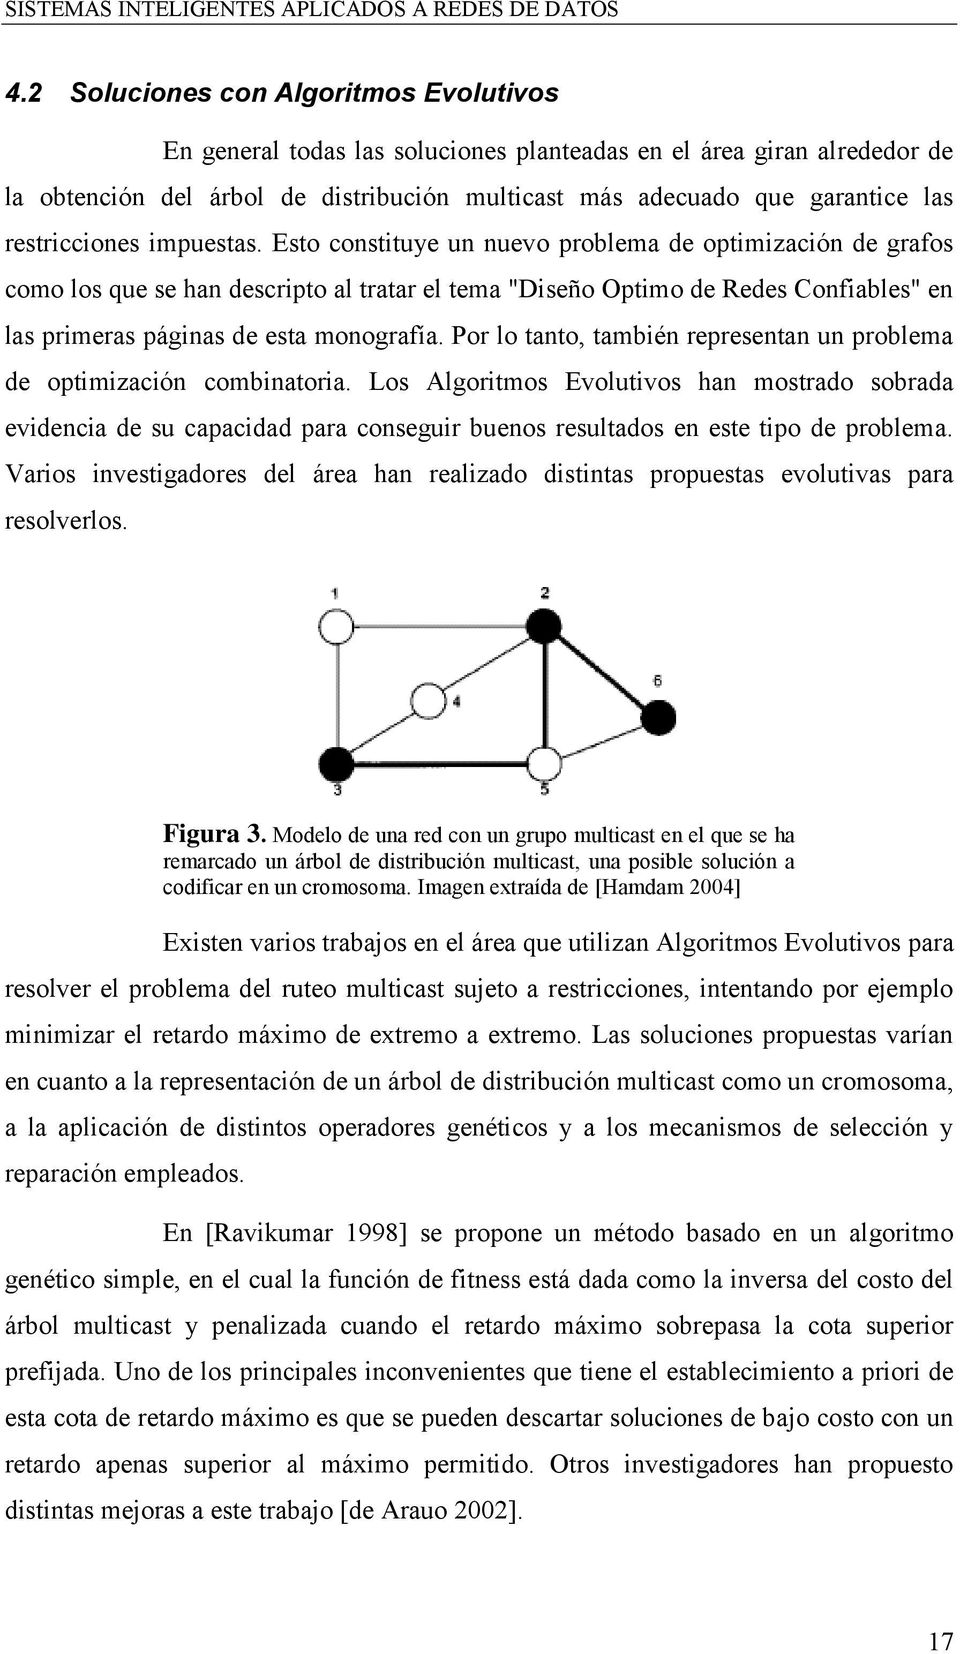 Esto constituye un nuevo problema de optimización de grafos como los que se han descripto al tratar el tema "Diseño Optimo de Redes Confiables" en las primeras páginas de esta monografía.